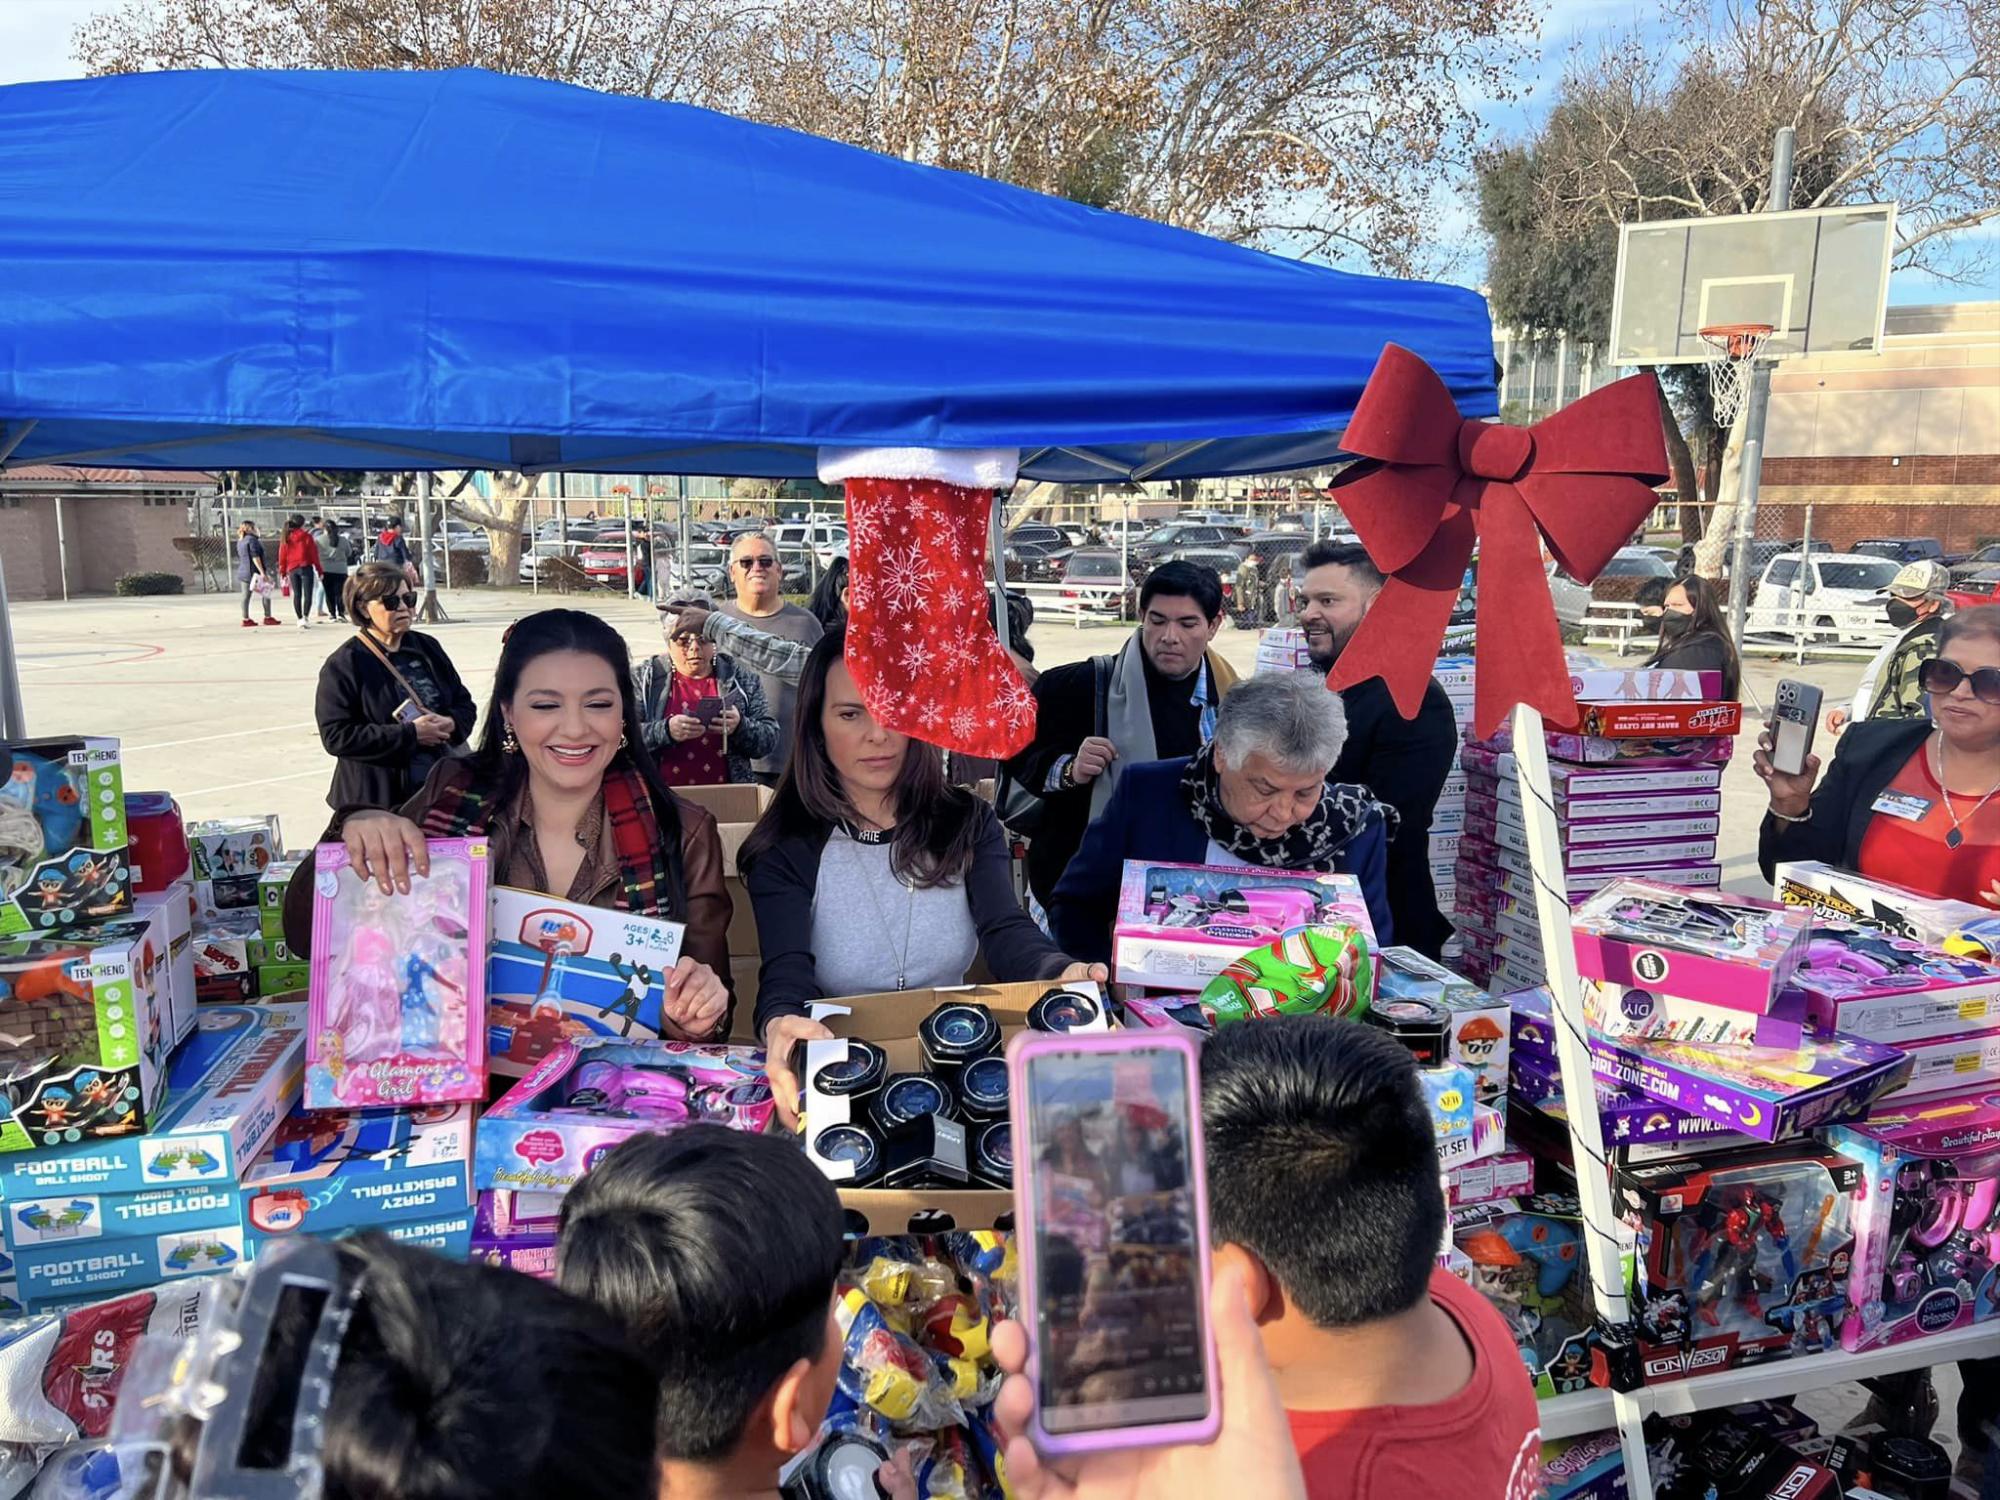 $!Se convierte Kate del Castillo en ‘Santa Claus’ reparte juguetes en California